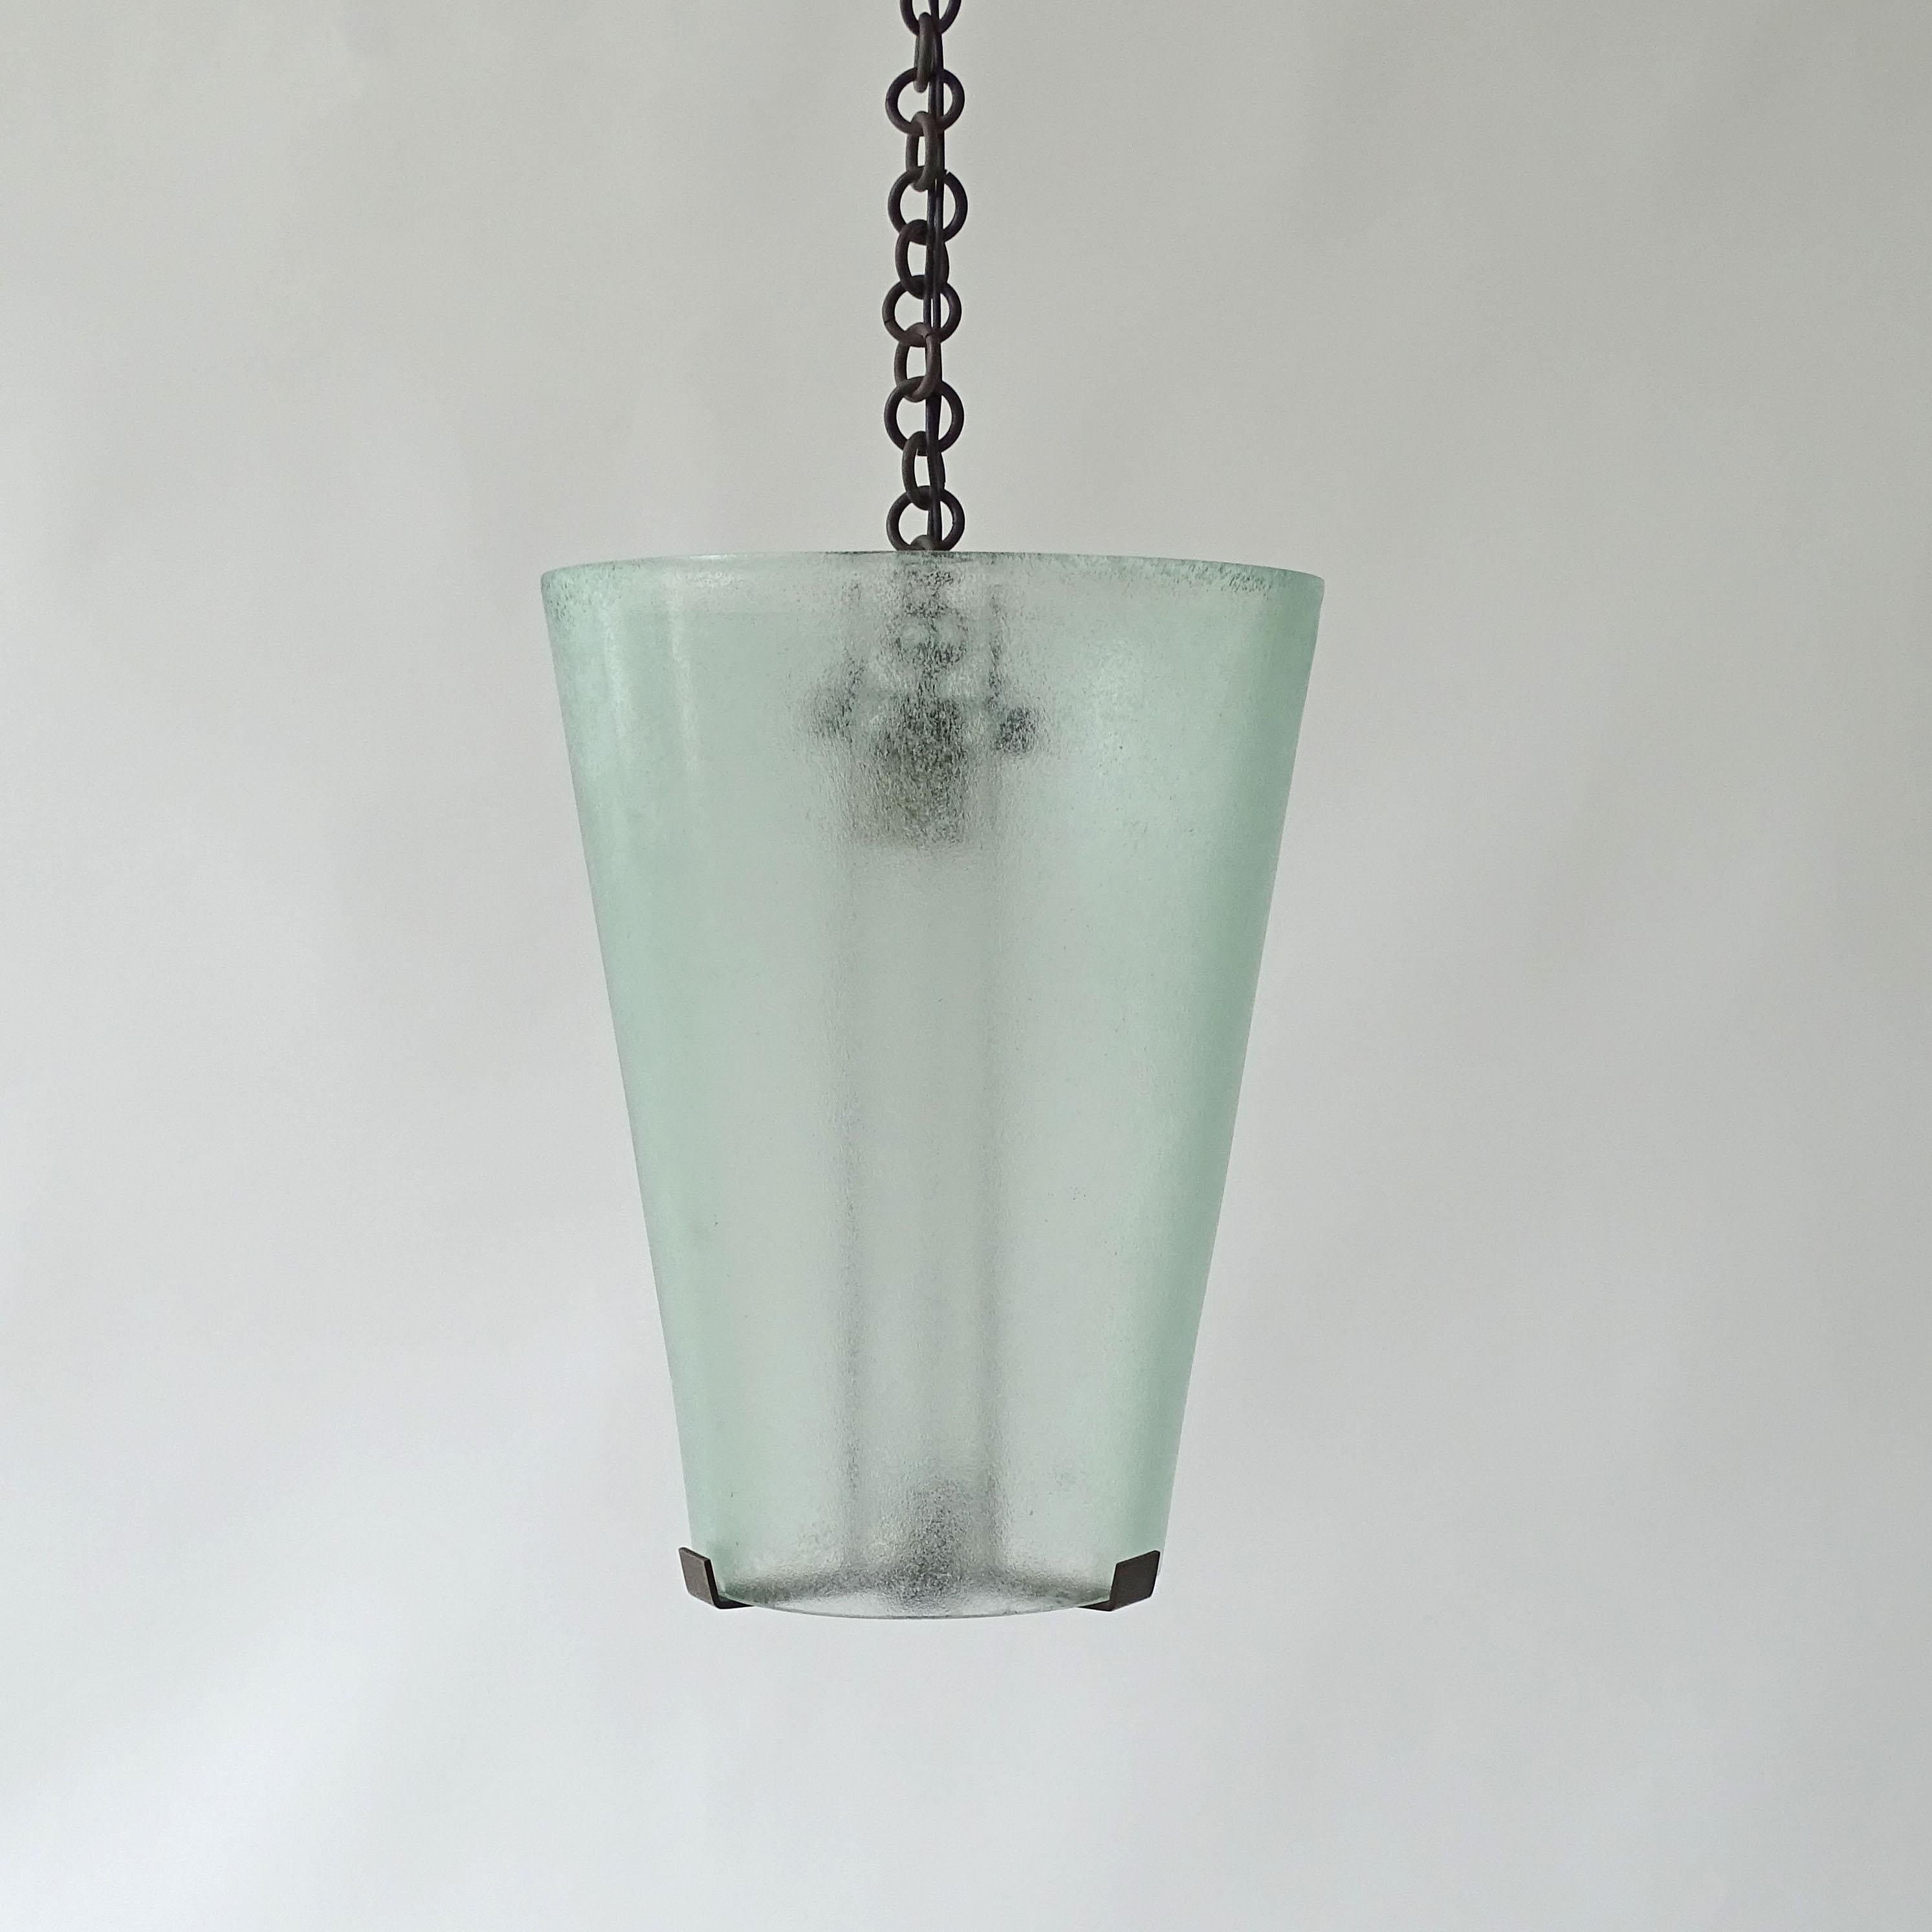 Splendide plafonnier Guglielmo Ulrich en laiton et verre de Murano,
Le verre est un verre Corroso vert clair fabriqué par Seguso Vetri D'Arte.
Italie années 1940